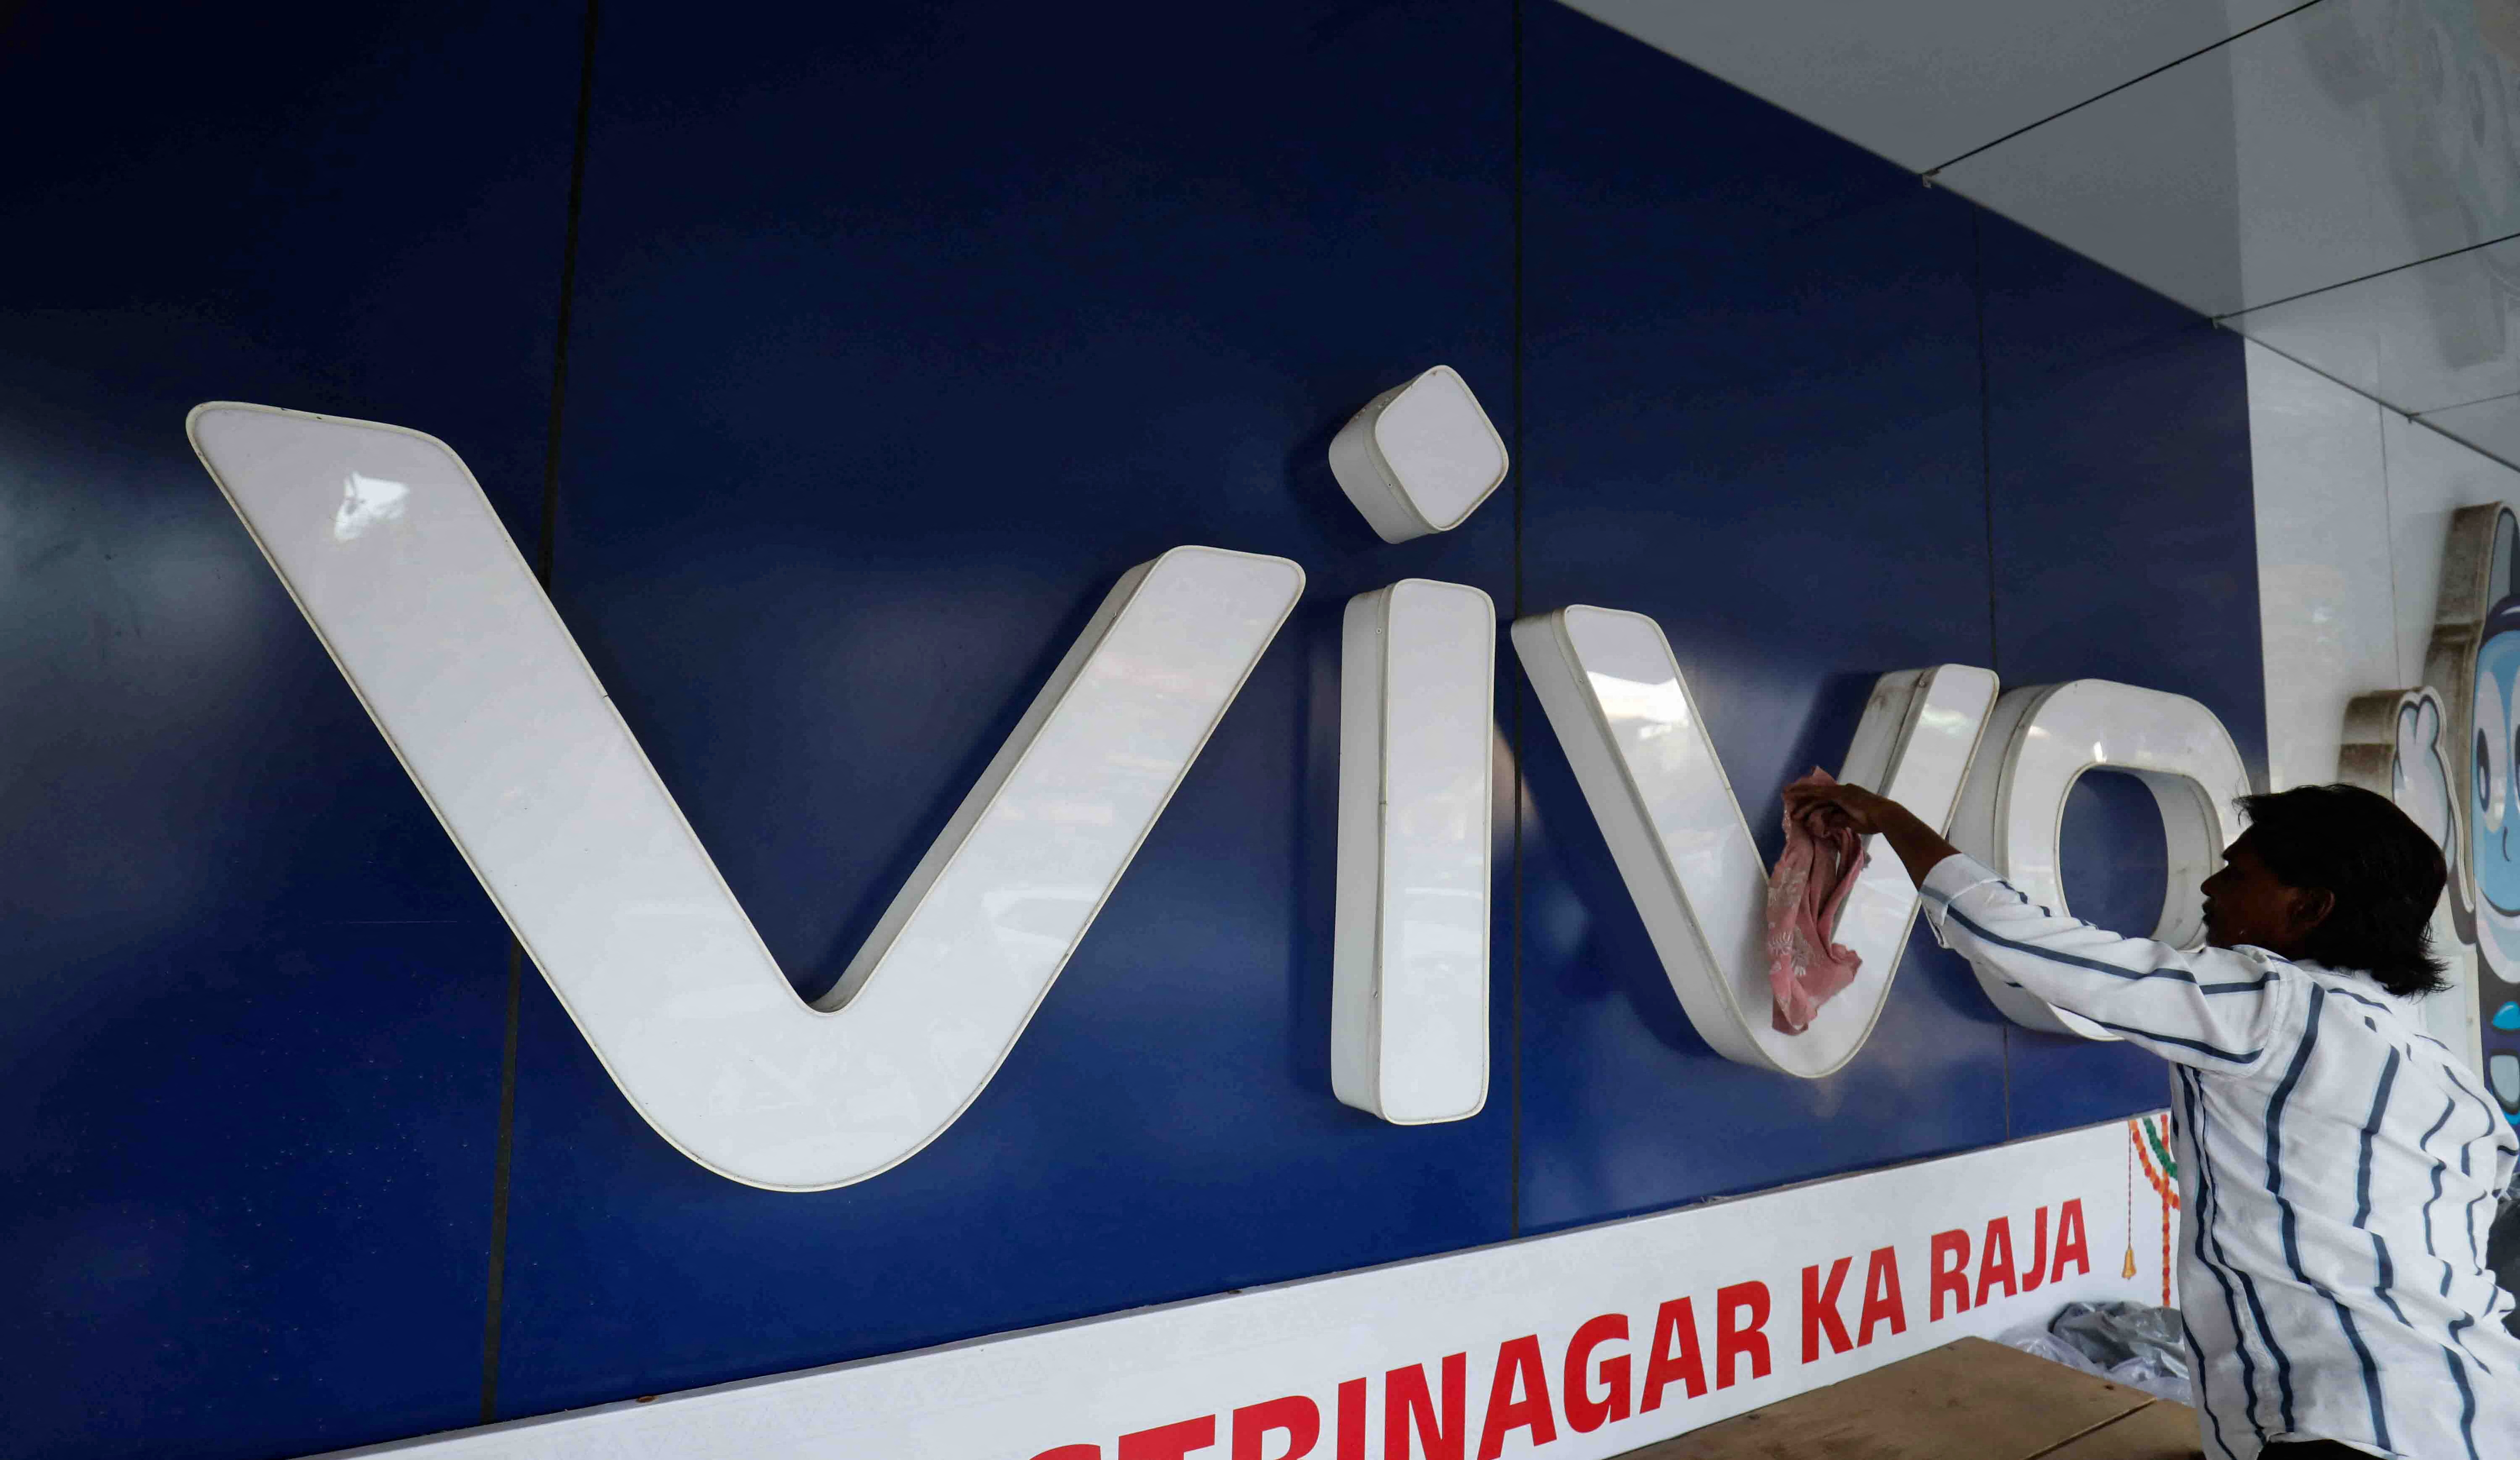 هند شرکت Vivo چین را به نقض روادید متهم می کند و ۱۳ میلیارد دلار از این شرکت خارج می کند